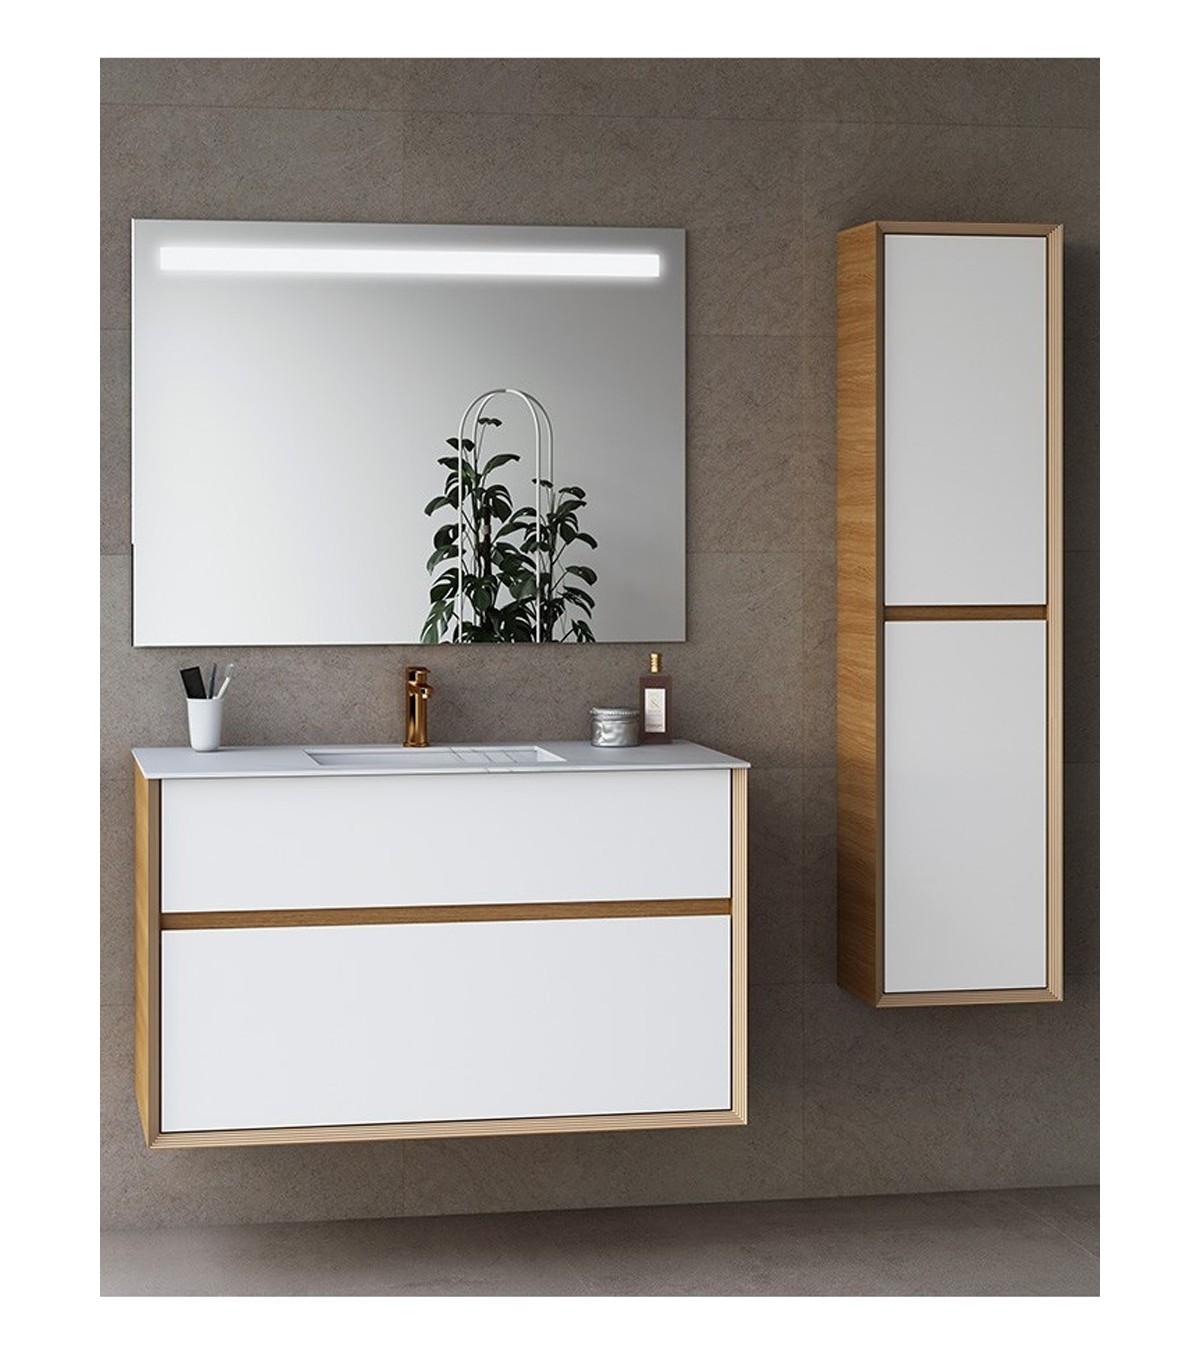 Conjunto completo mueble de baño NOJA de SALGAR al mejor precio garantizado.